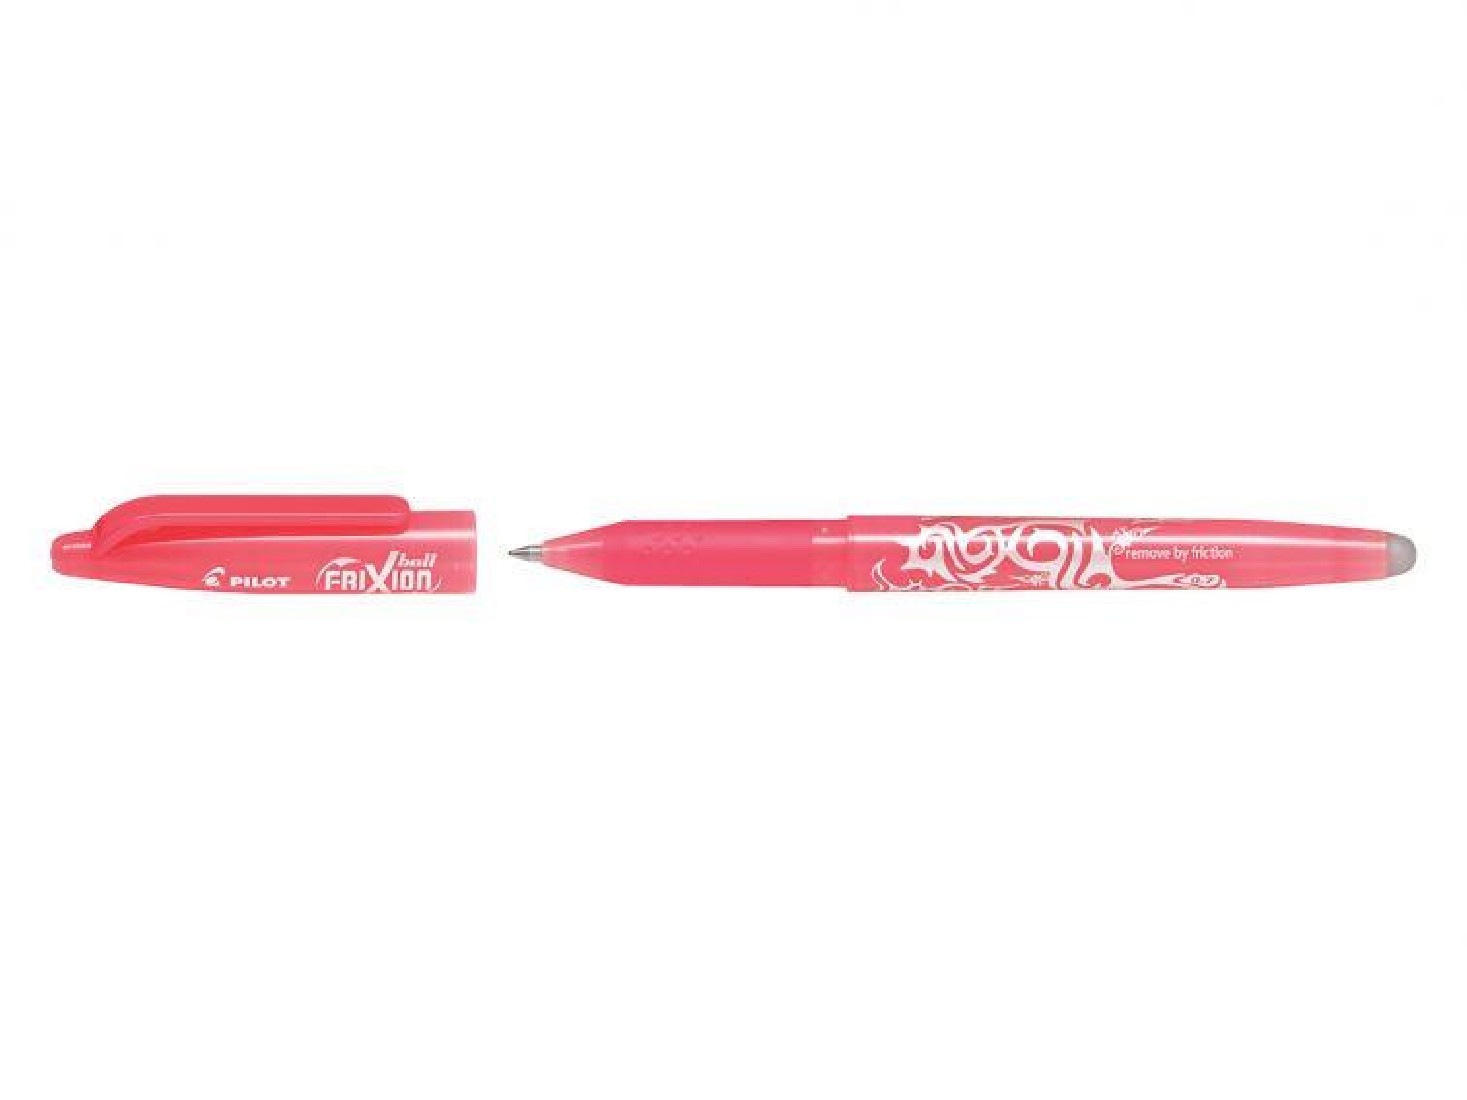 Βallpen Frixion 0.7 Coral Pink (Στυλό που σβήνει) Pilot